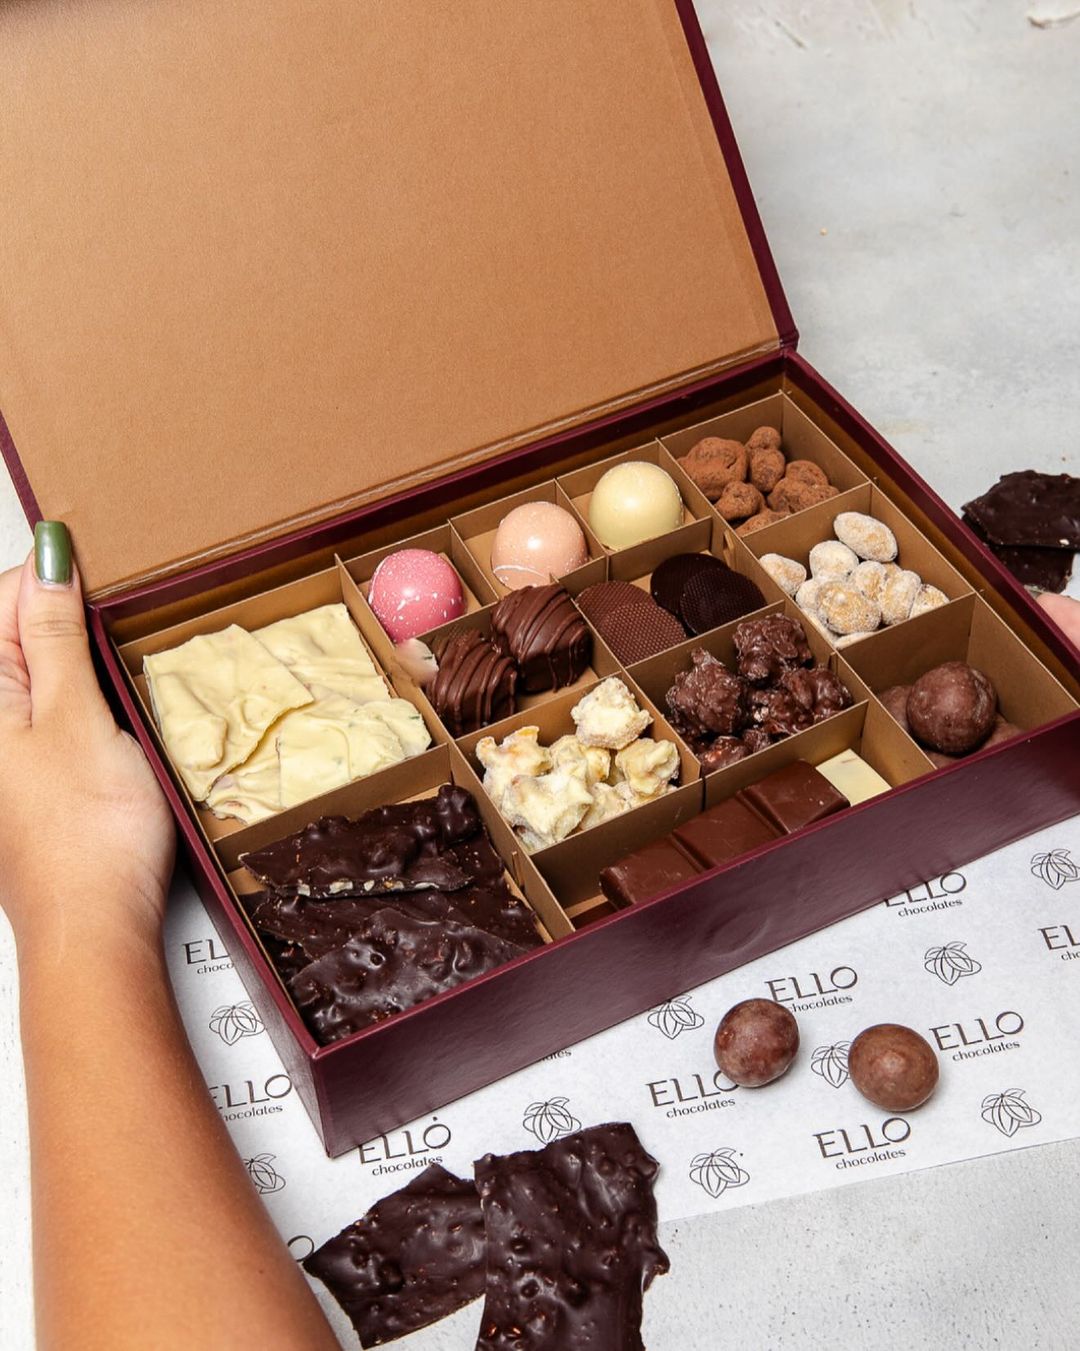 Ello Chocolates: conheça a loja de produtos artesanais feitos com chocolate